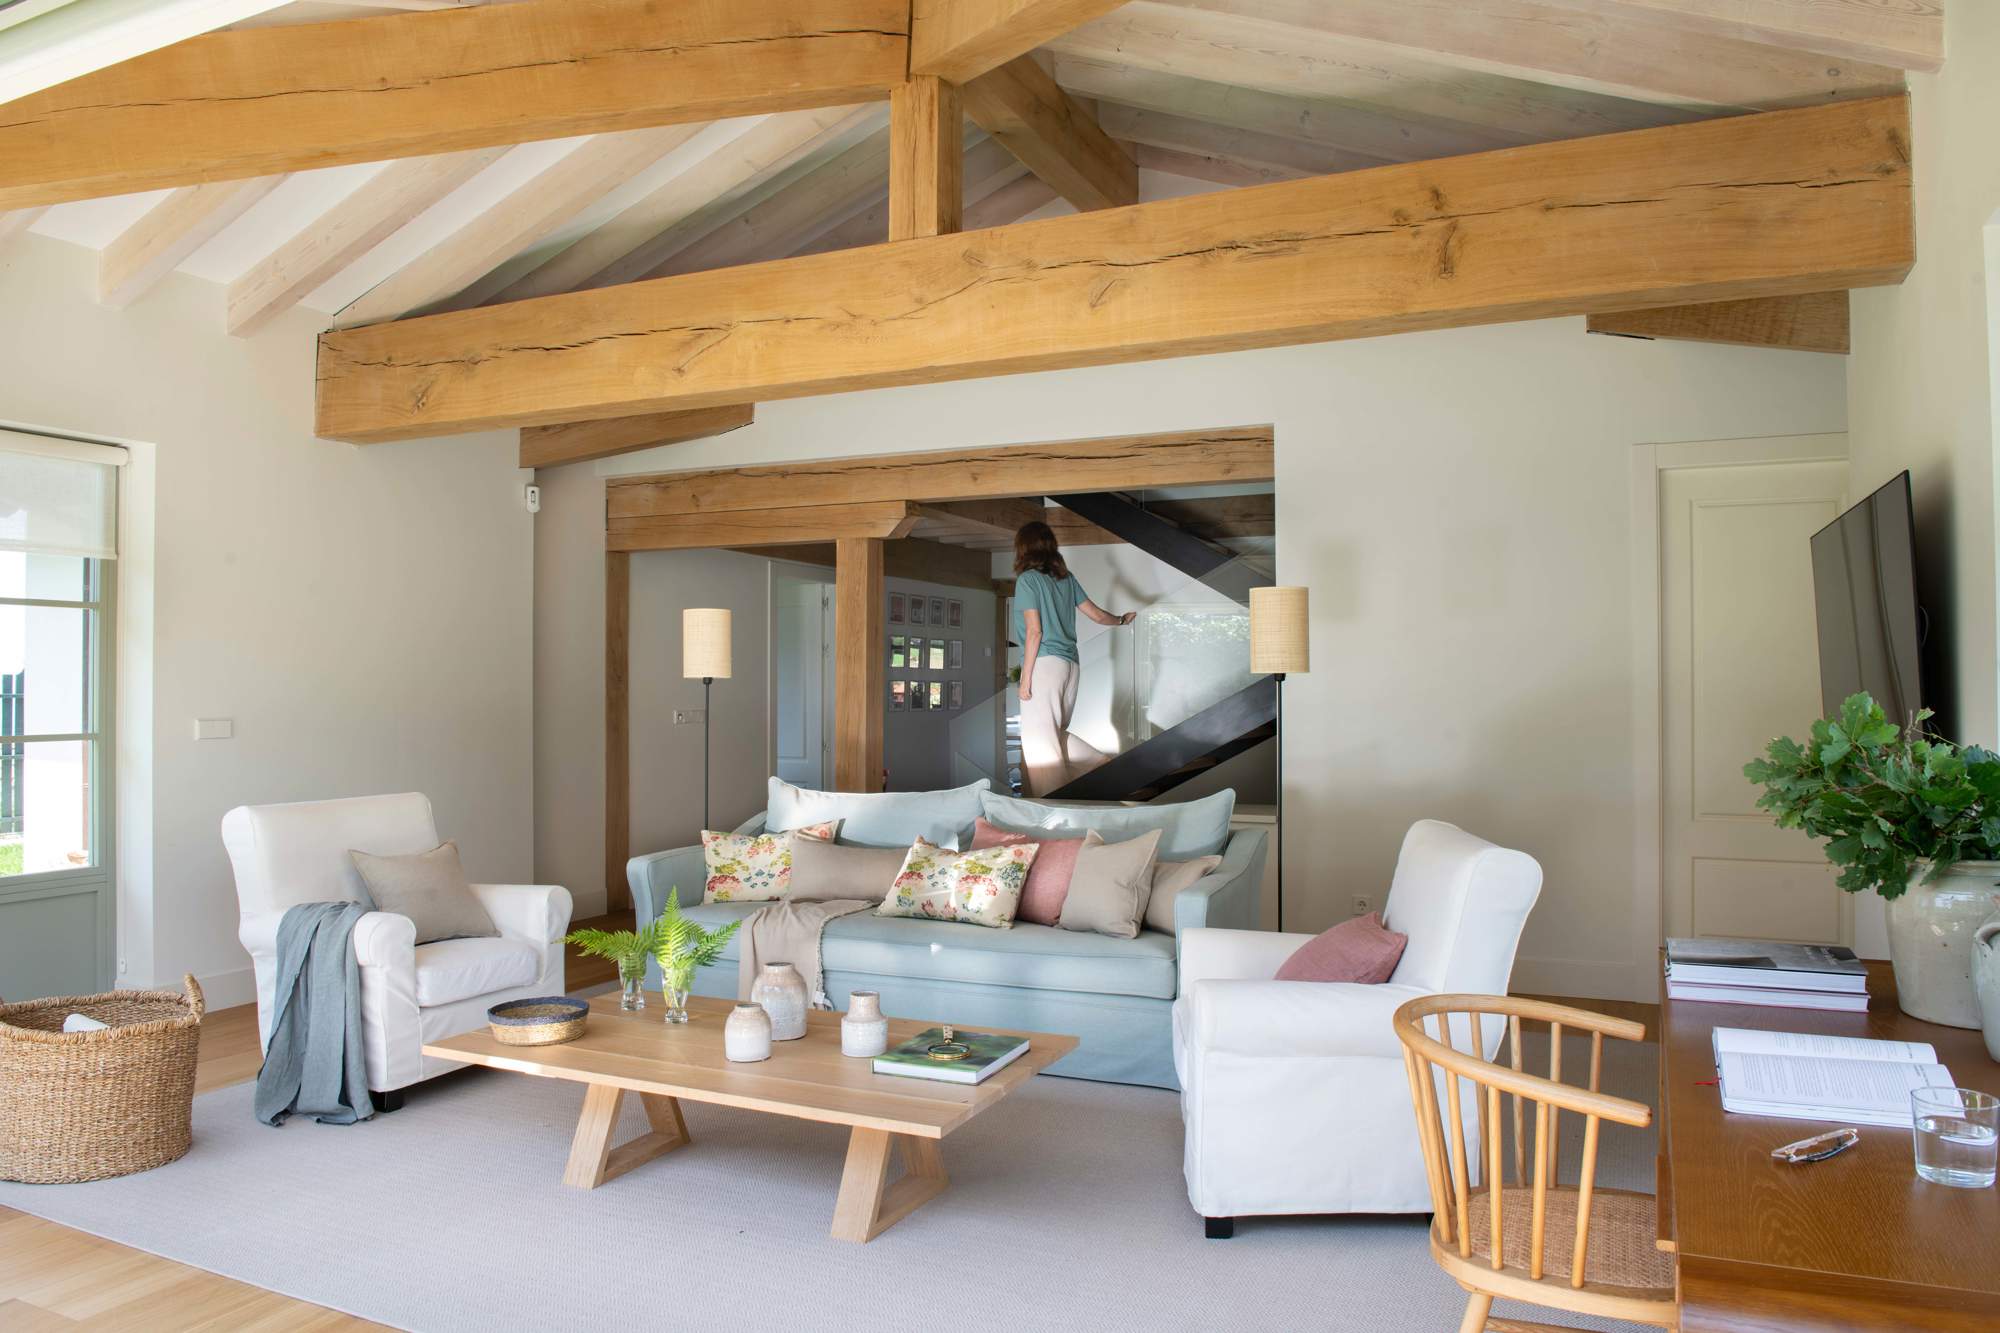 Salón con vigas en el techo, sofá azul, butacas blancas, mesa de madera y alfombra blanca